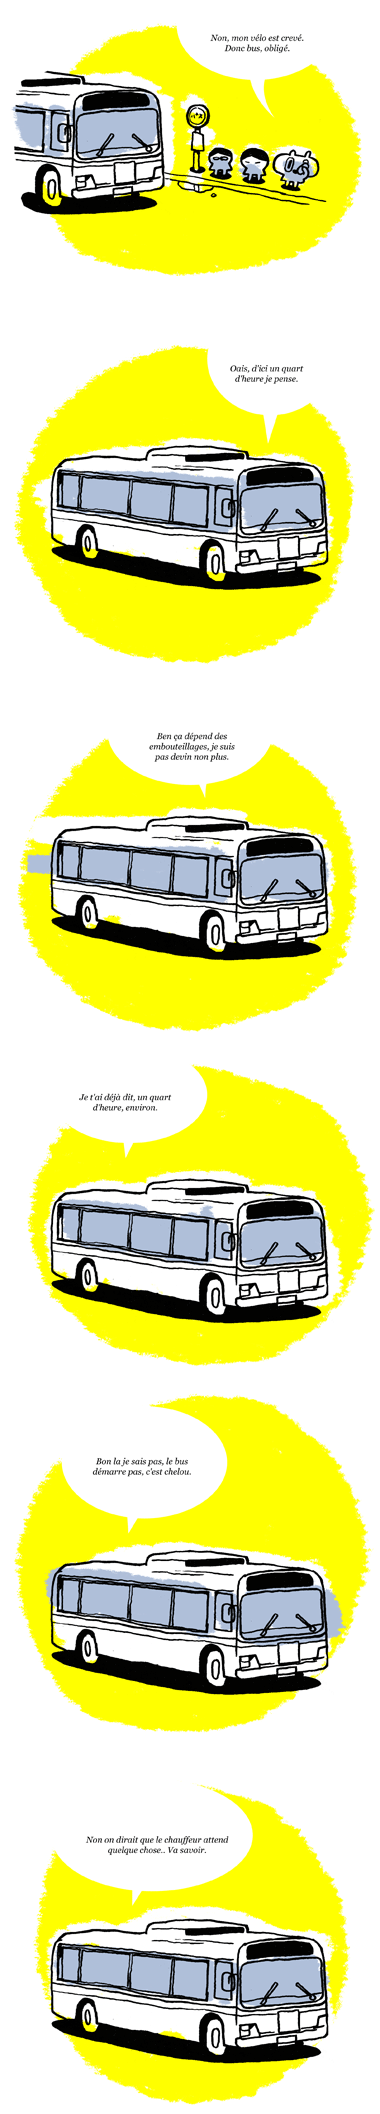 bus-02